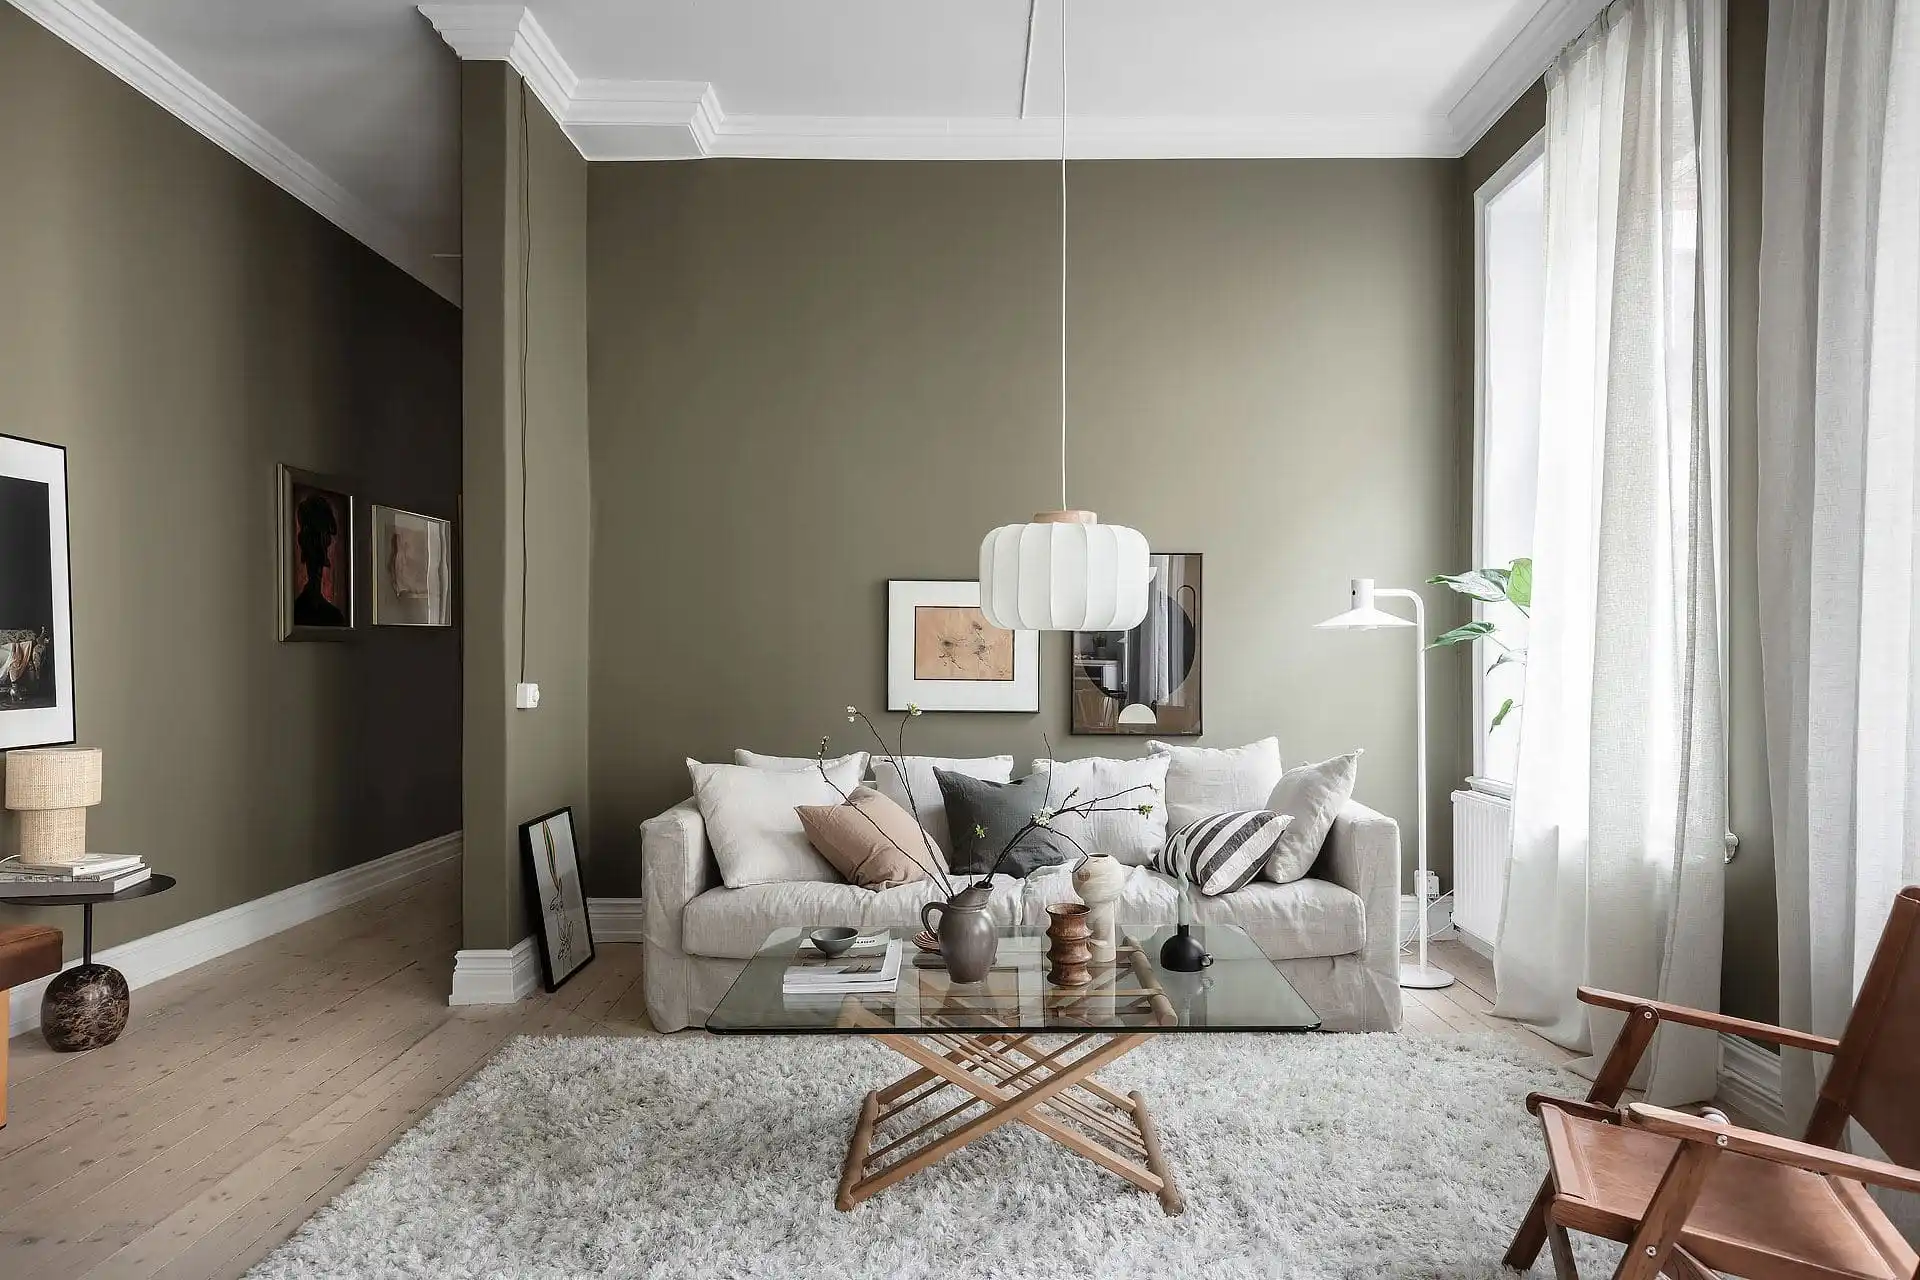 Naast kussens in hetzelfde materiaal en kleur als de bank, zijn er ook kussens gebruikt in andere kleurtinten, die complementair zijn aan de beige bank en olijfgroene muur.